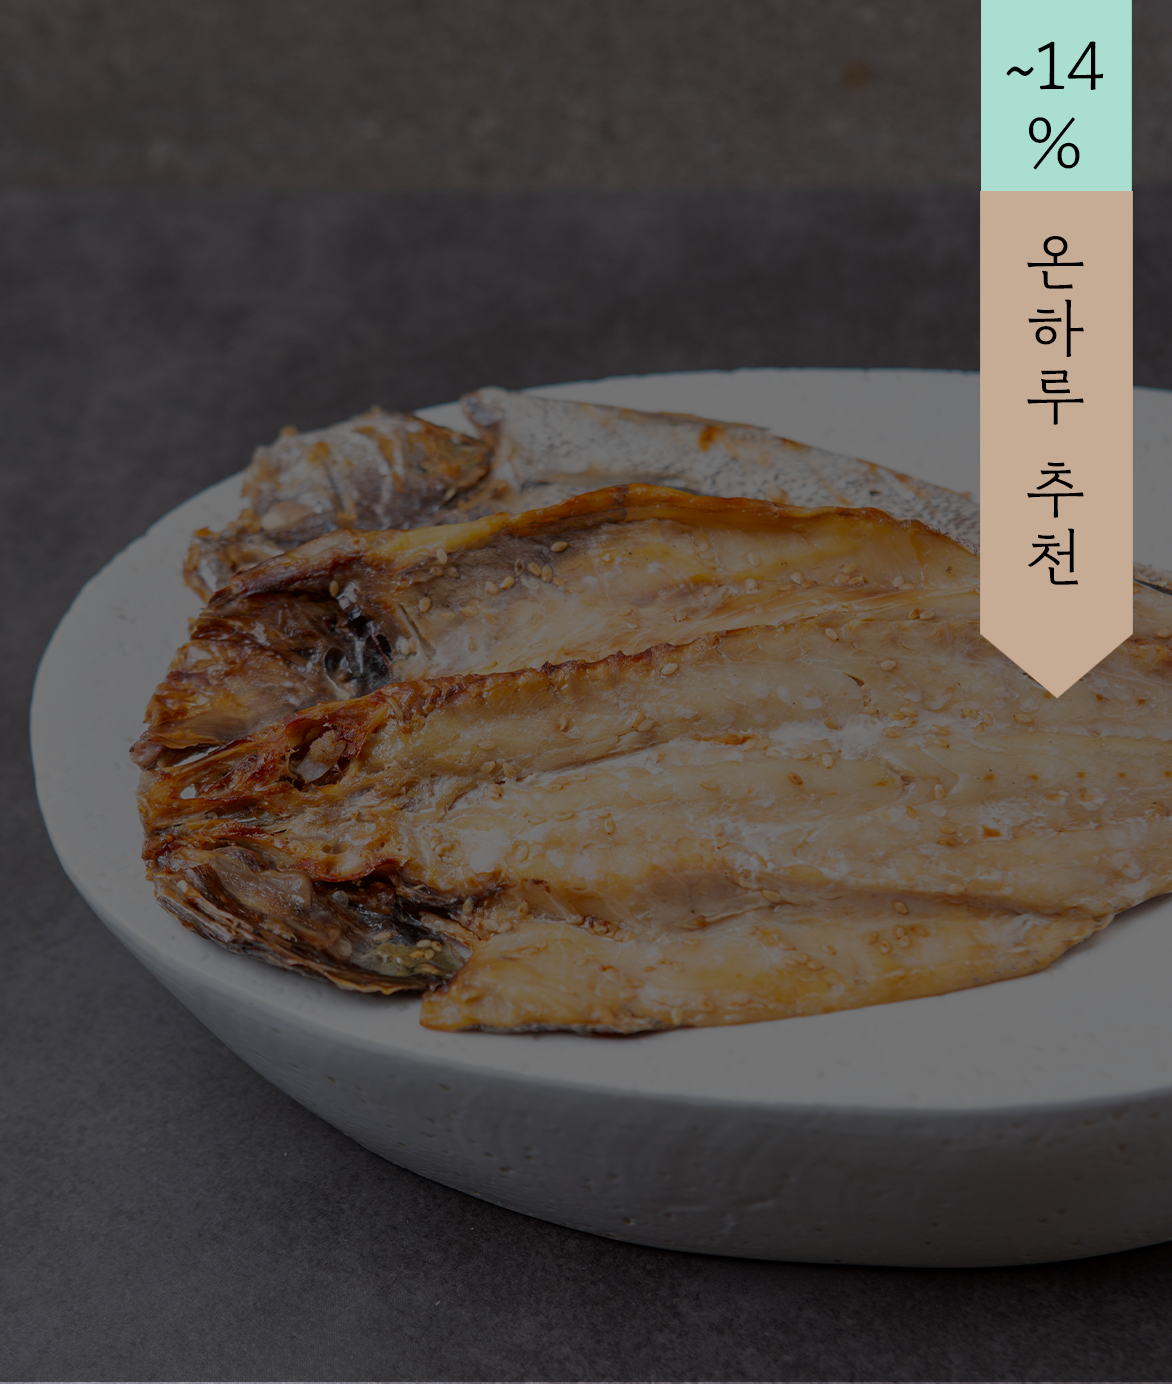 [판매 완료] 생선바보 고흥민어, 삼천포꽃돔, 삼천포가자미, 영광참굴비